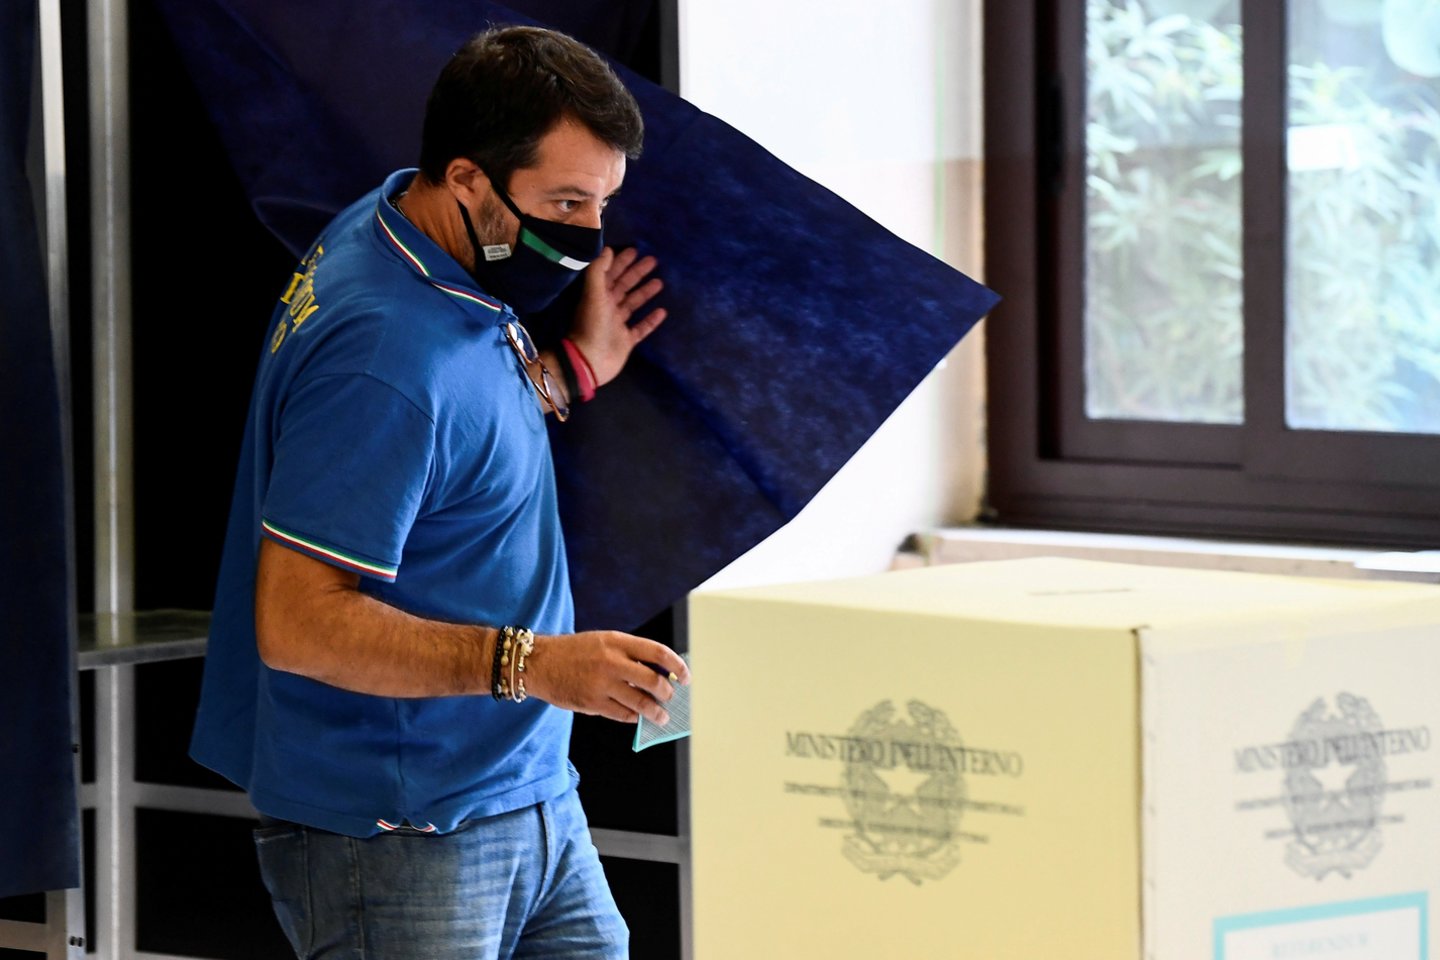  Rinkėjų aktyvumas Toskanoje buvo 62 procentai.  <br>Reuters/Scanpix nuotr.